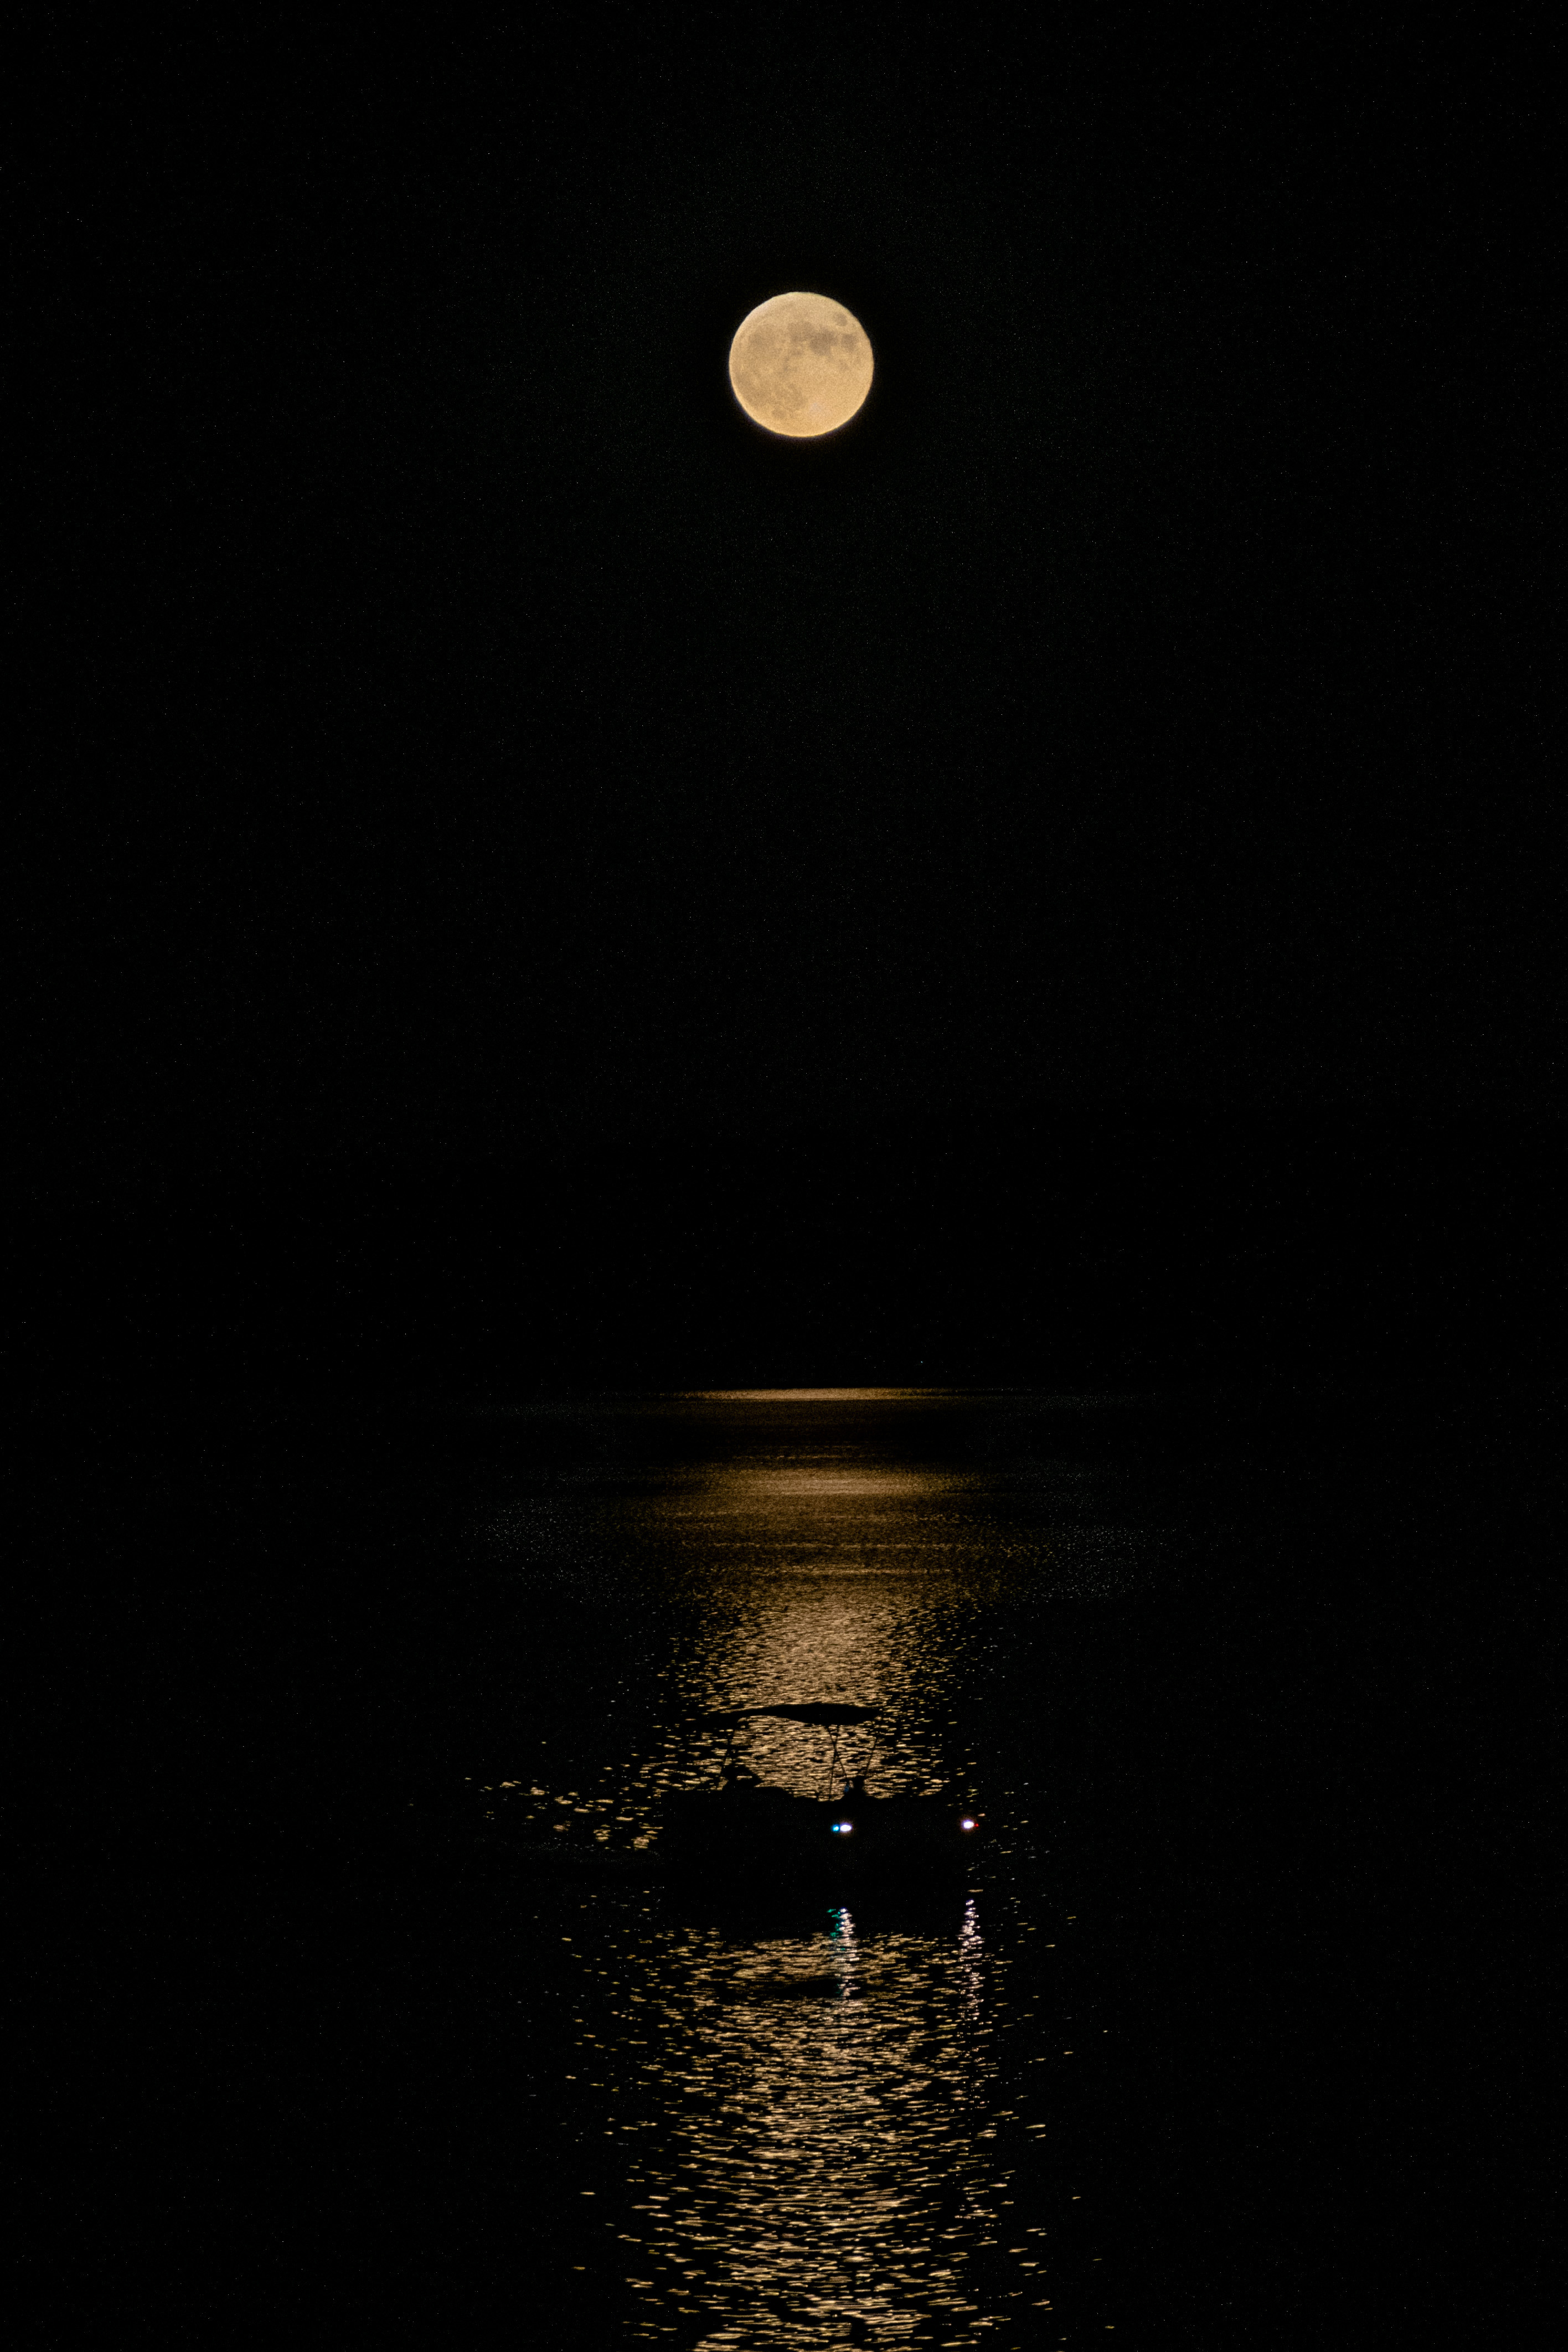 Una luna llena cuelga en un cielo negro, mientras un barco pasa a través de su reflejo alargado en un poco de agua.